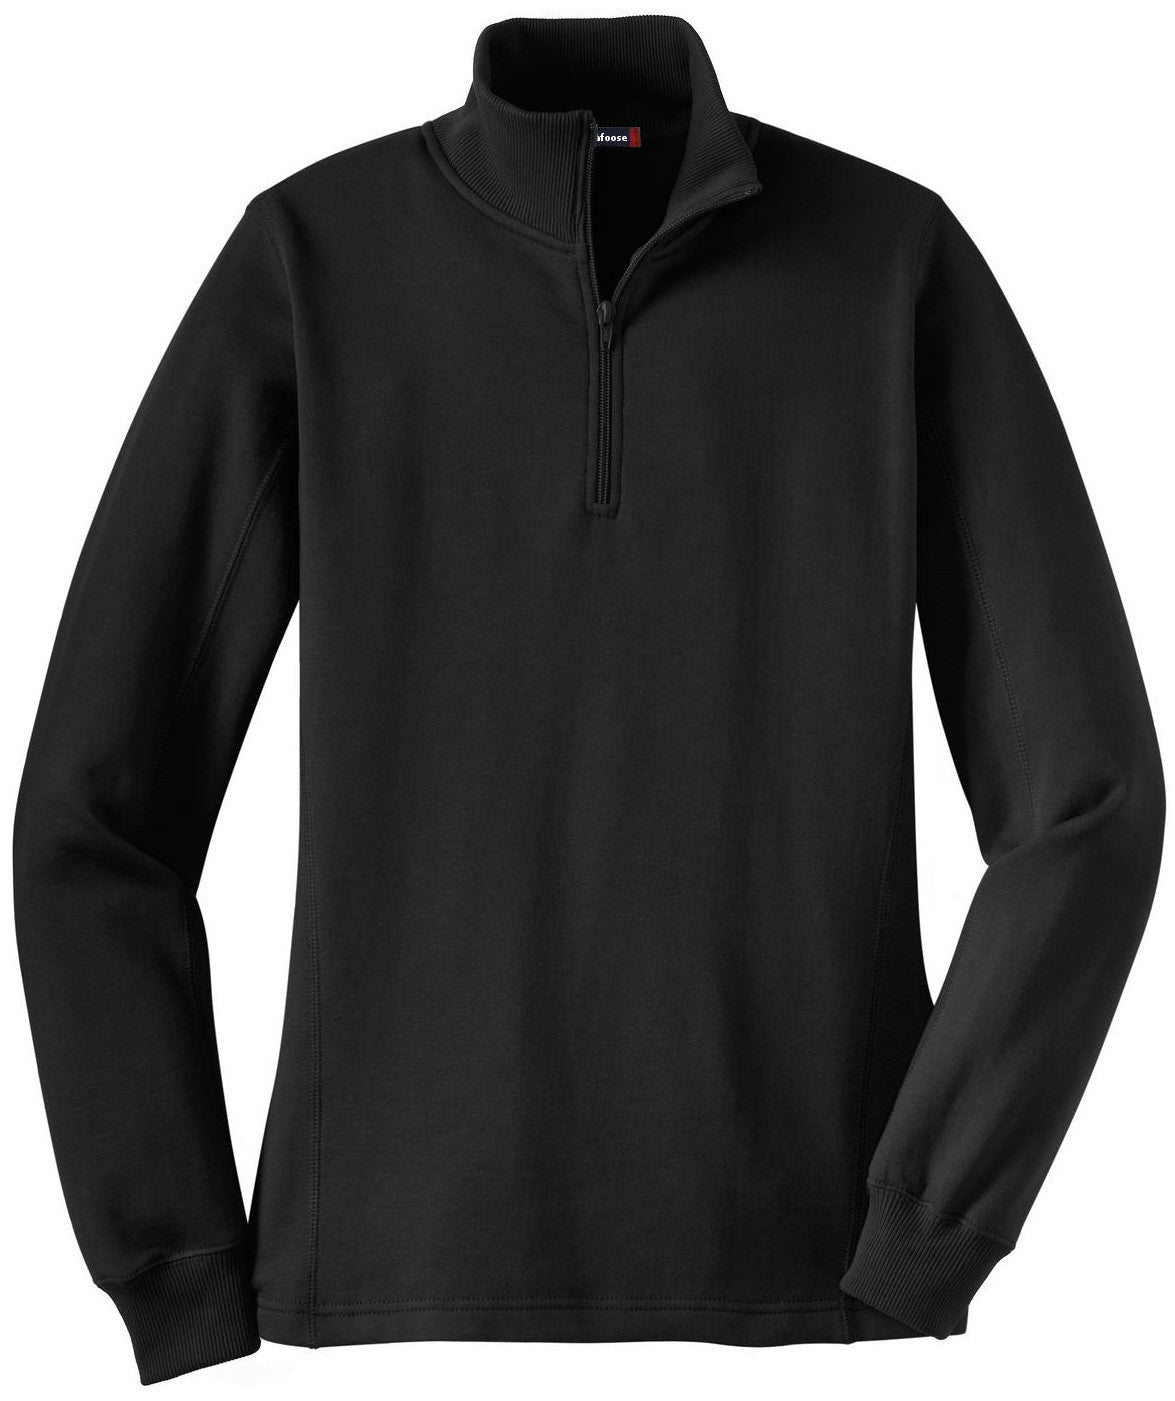 Mafoose Women's 1/4 Zip Sweatshirt Black-Front